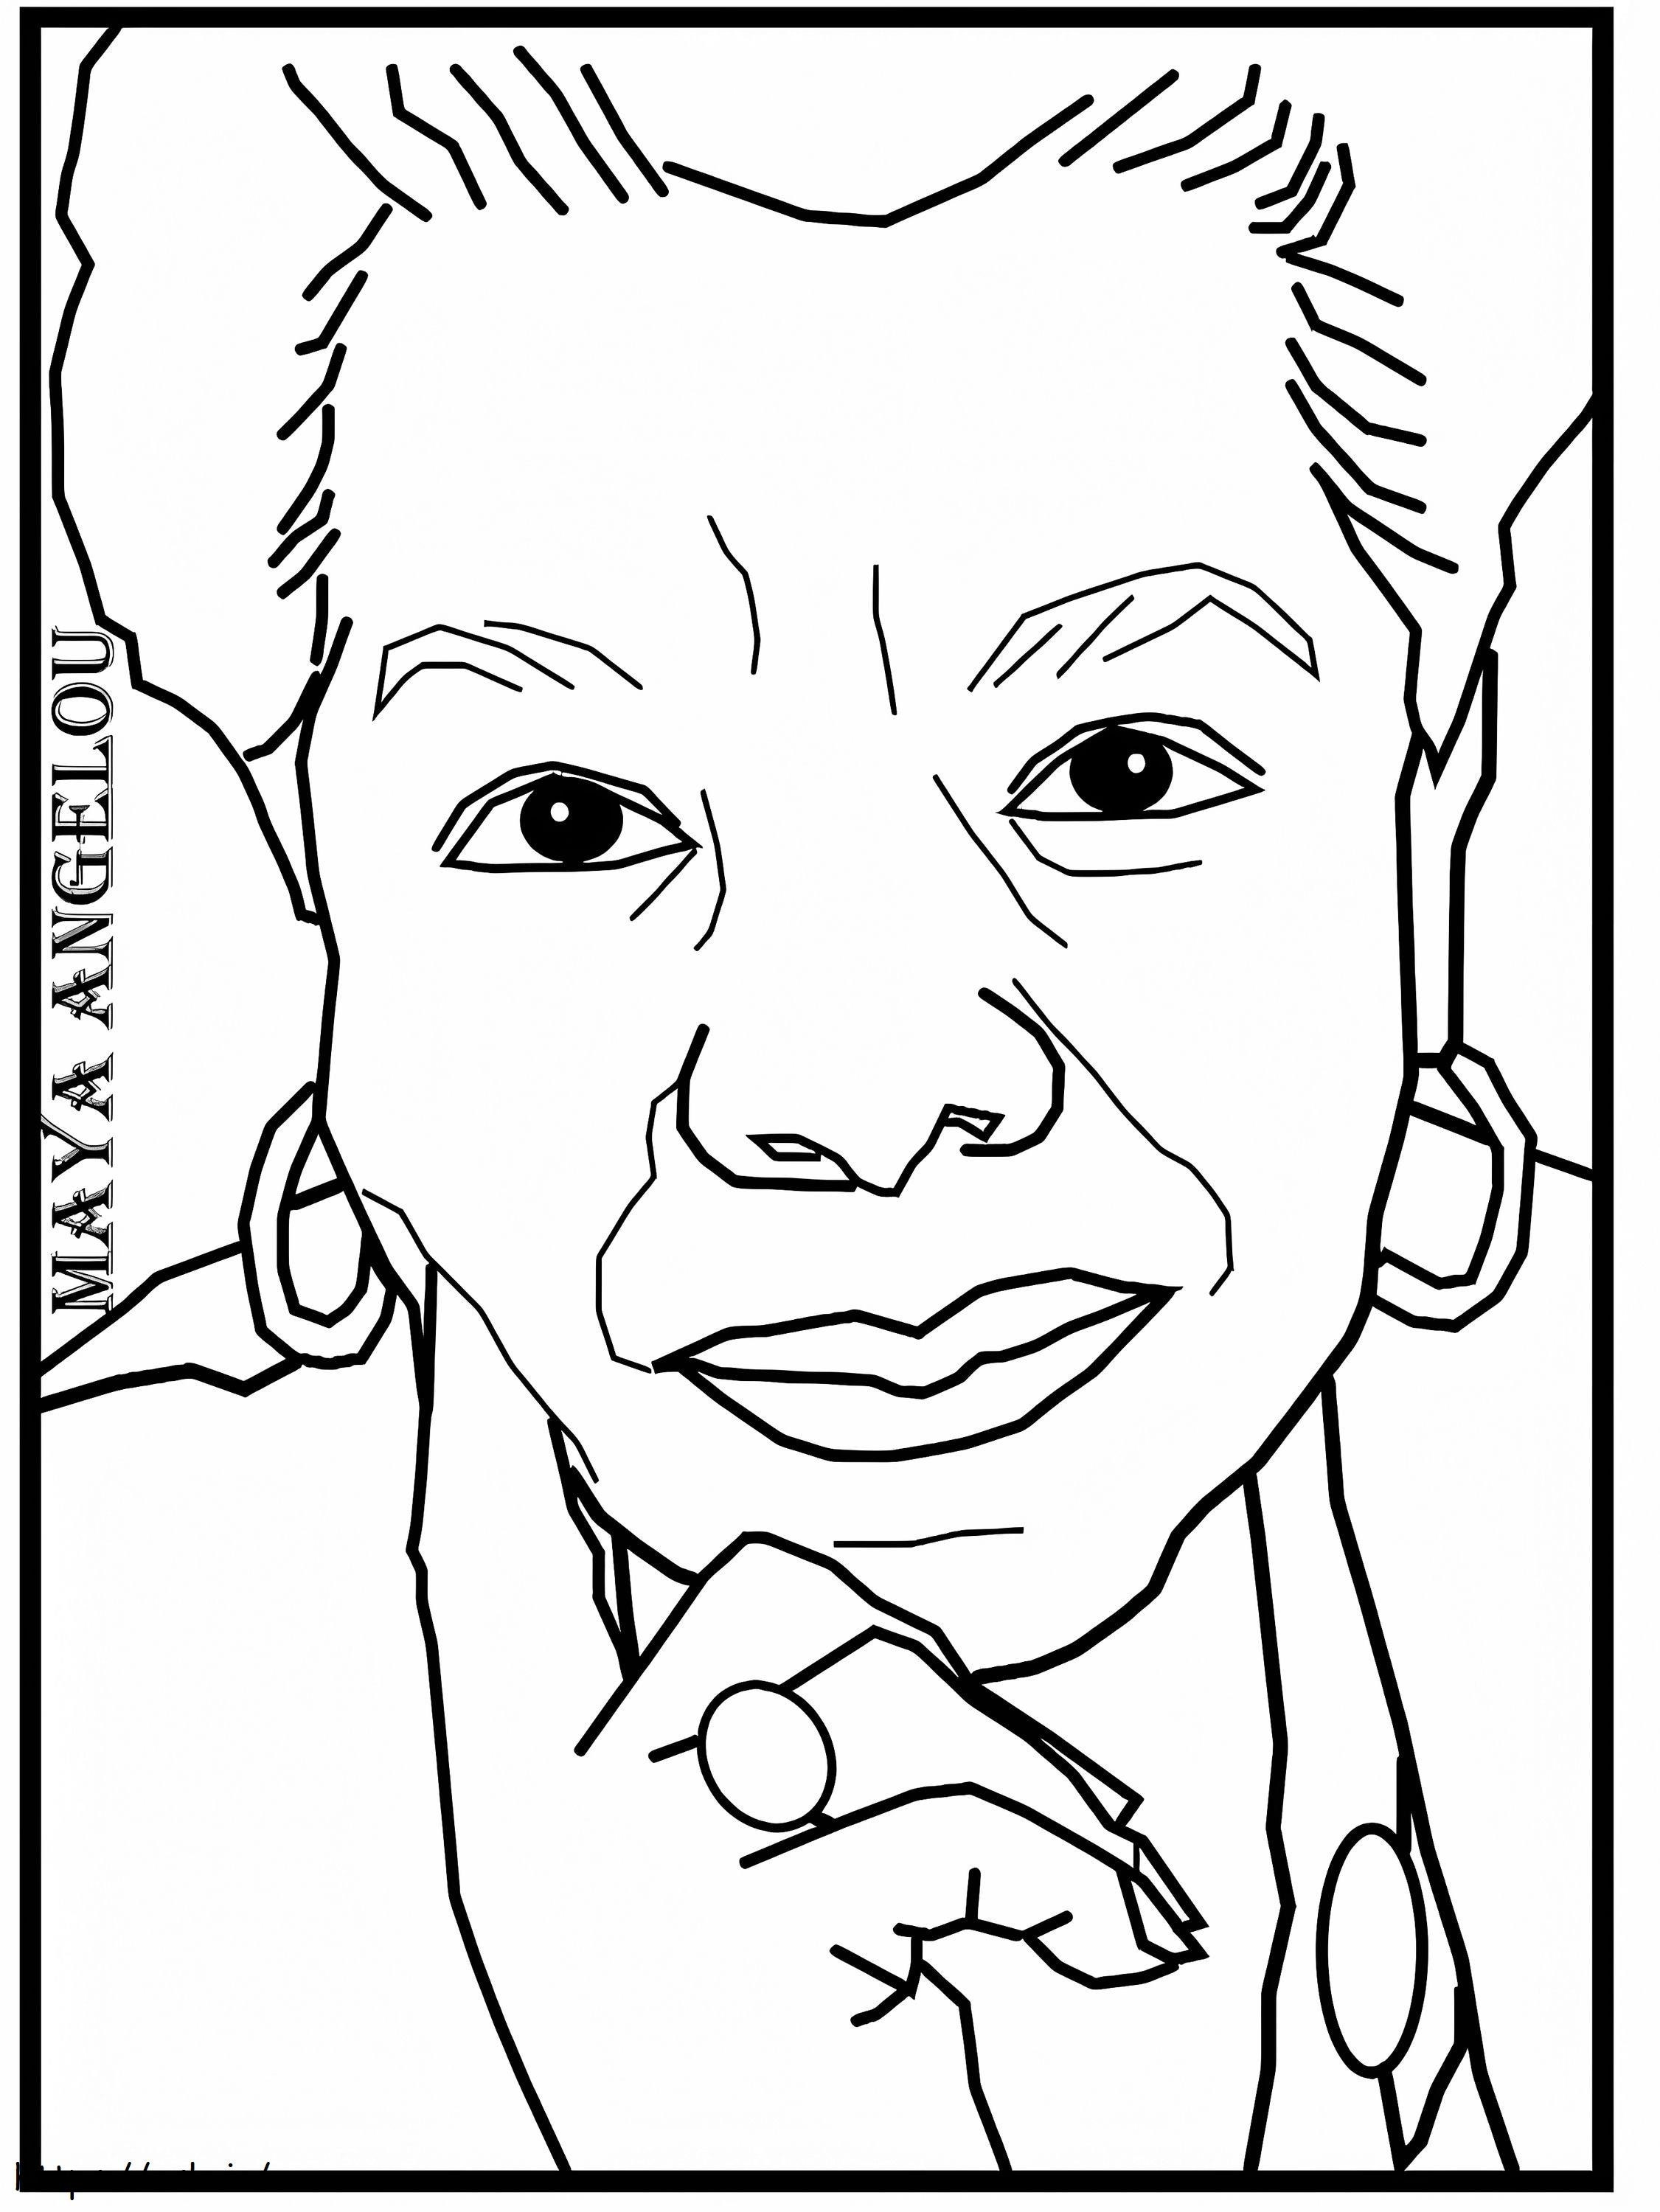 Maya Angelou 1 kleurplaat kleurplaat